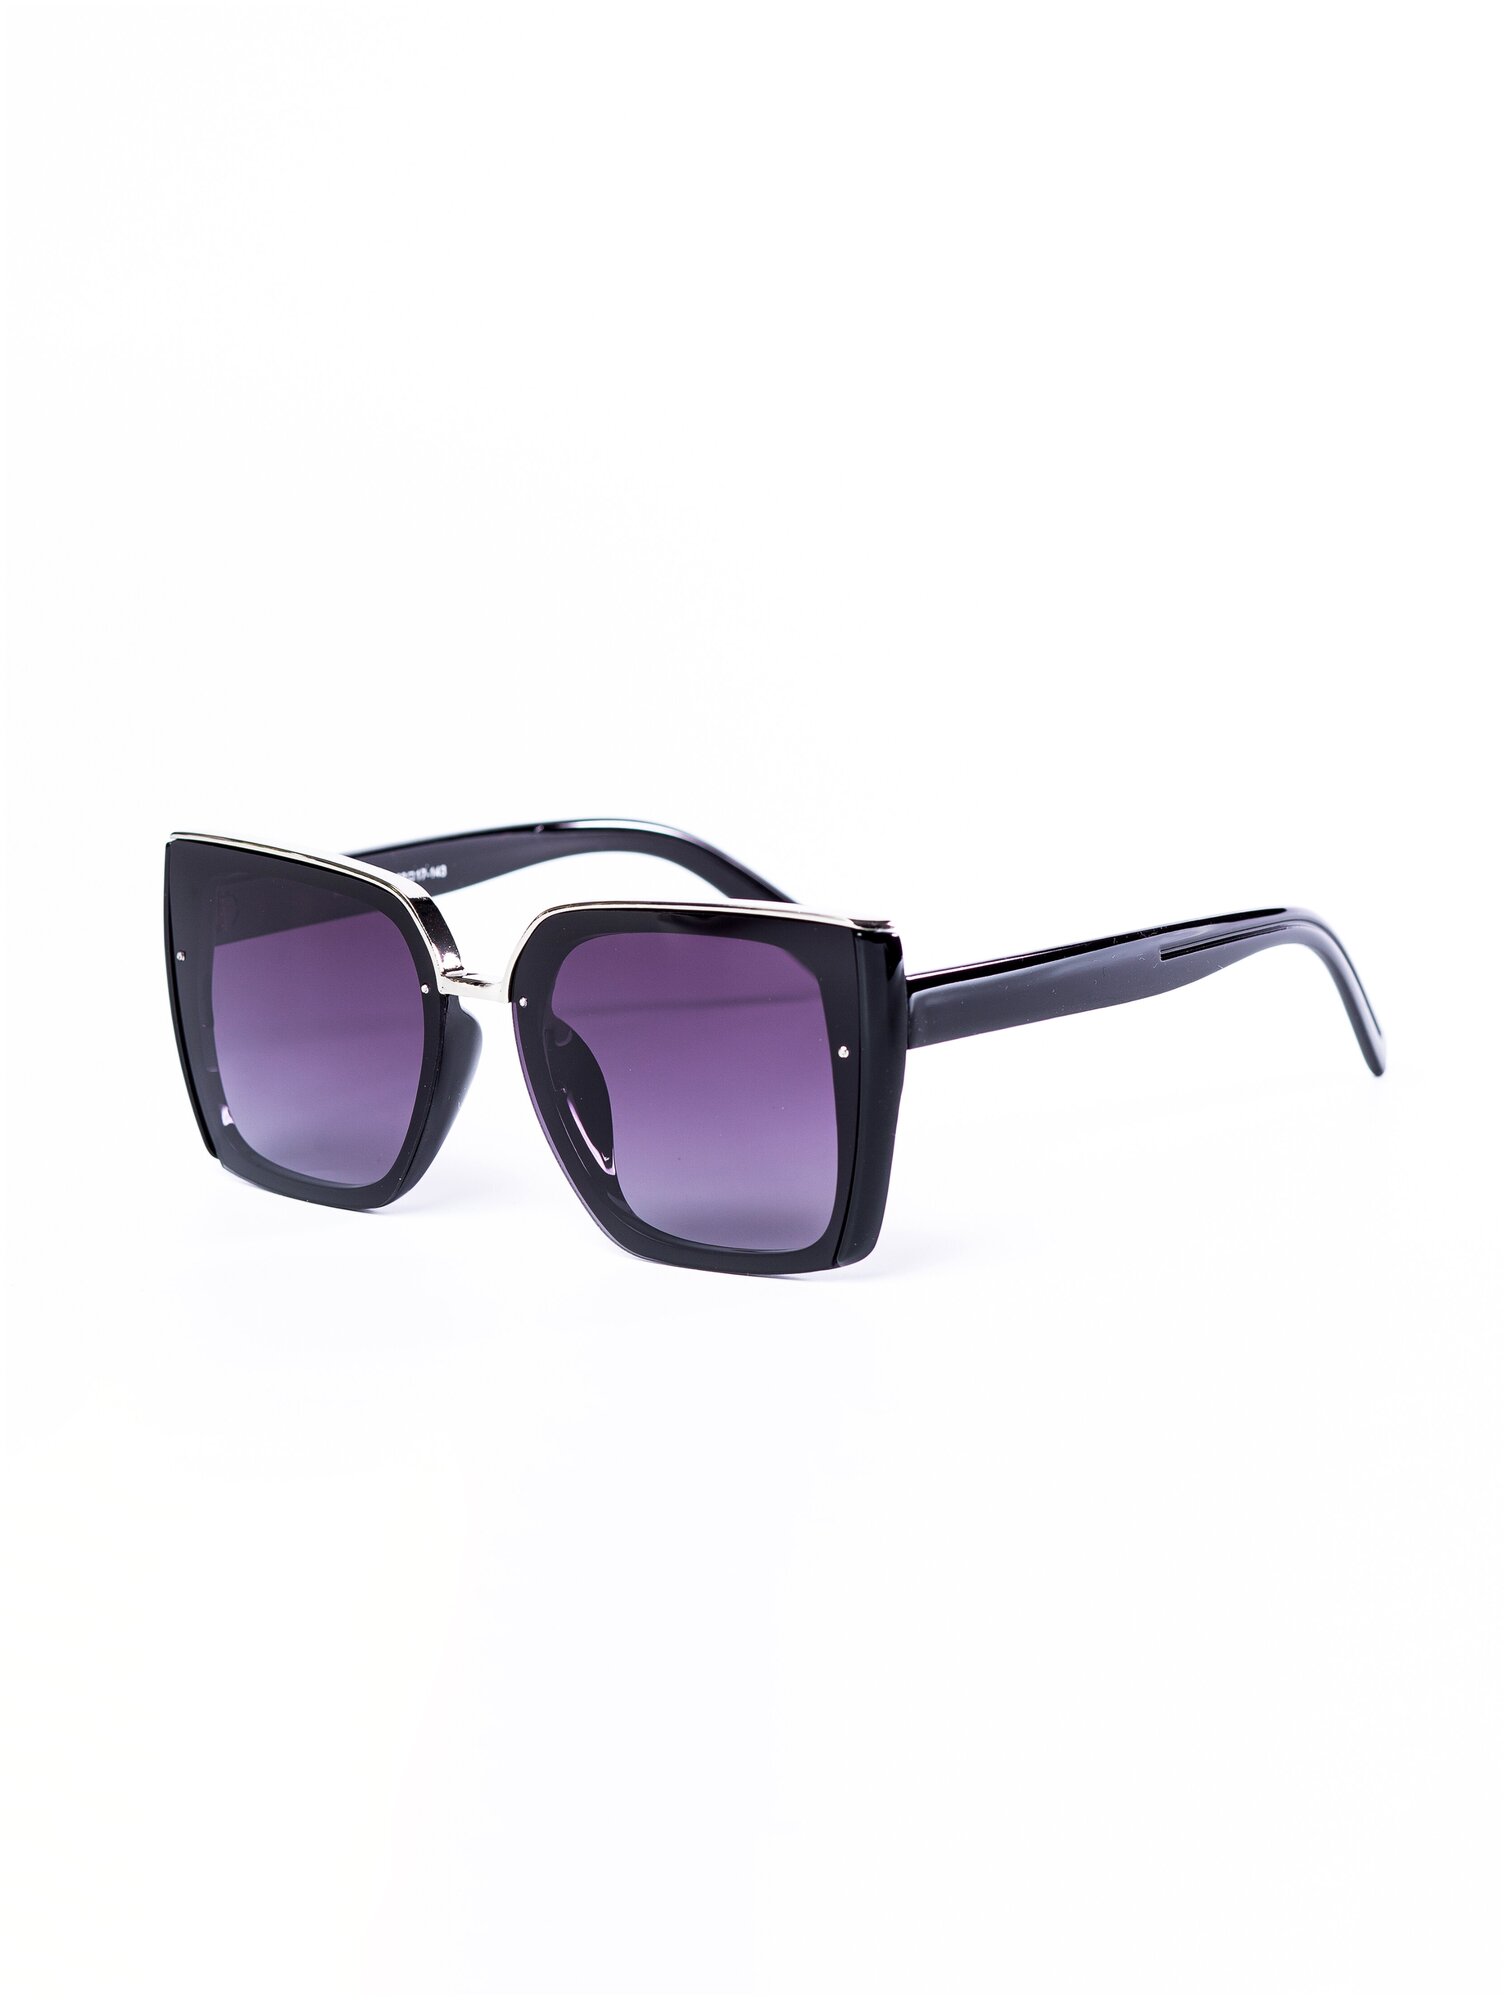 Солнцезащитные очки женские / Квадратная оправа / Стильные очки / Ультрафиолетовый фильтр / Защита UV400 / Темные очки 200422540